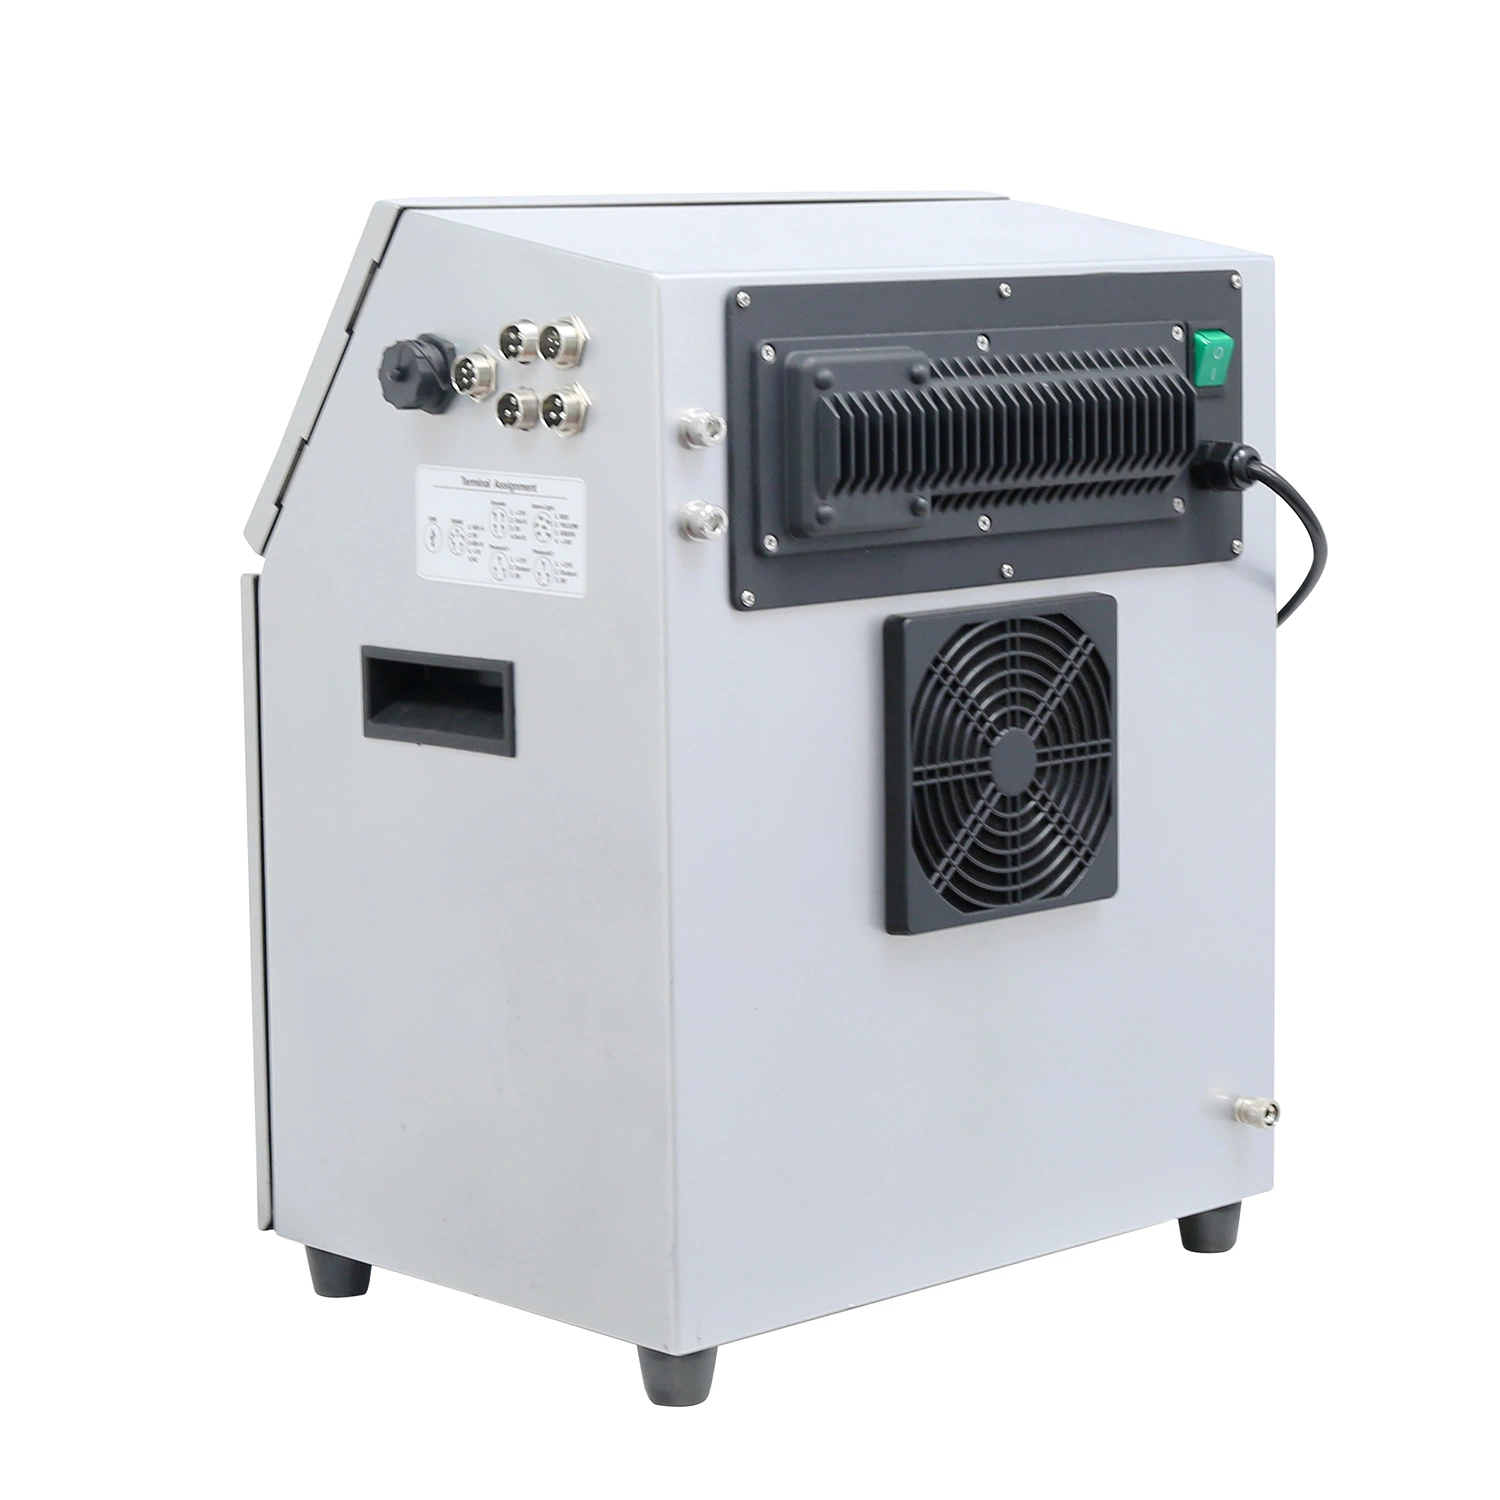 Leadtech Lt800 Data de máquinas de codificação impressora Thermal Inkjet